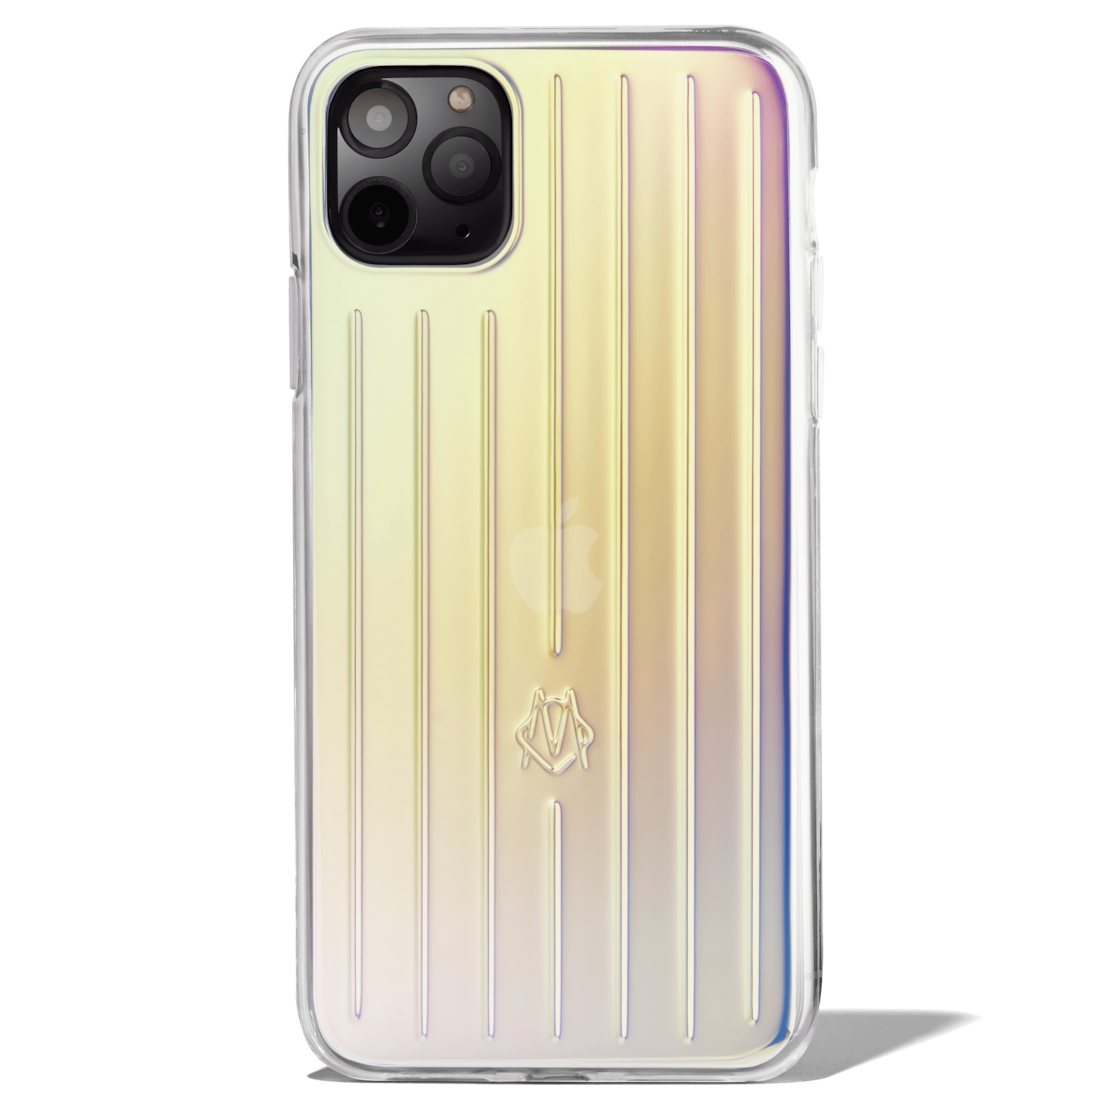 Iridescent Iphone 11 Pro Max Case Rimowa